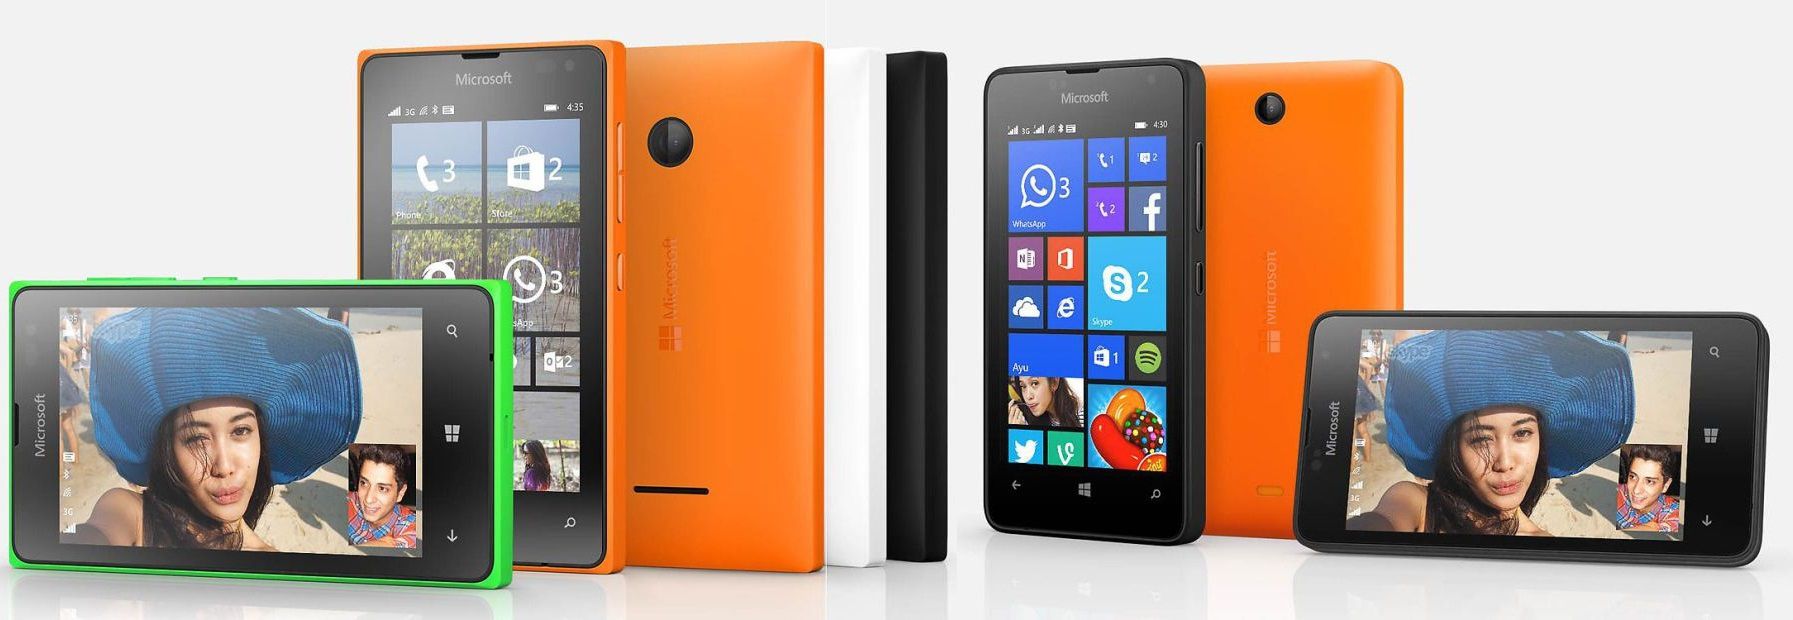 [image] Microsoft Lumia 435 vs. Lumia 430